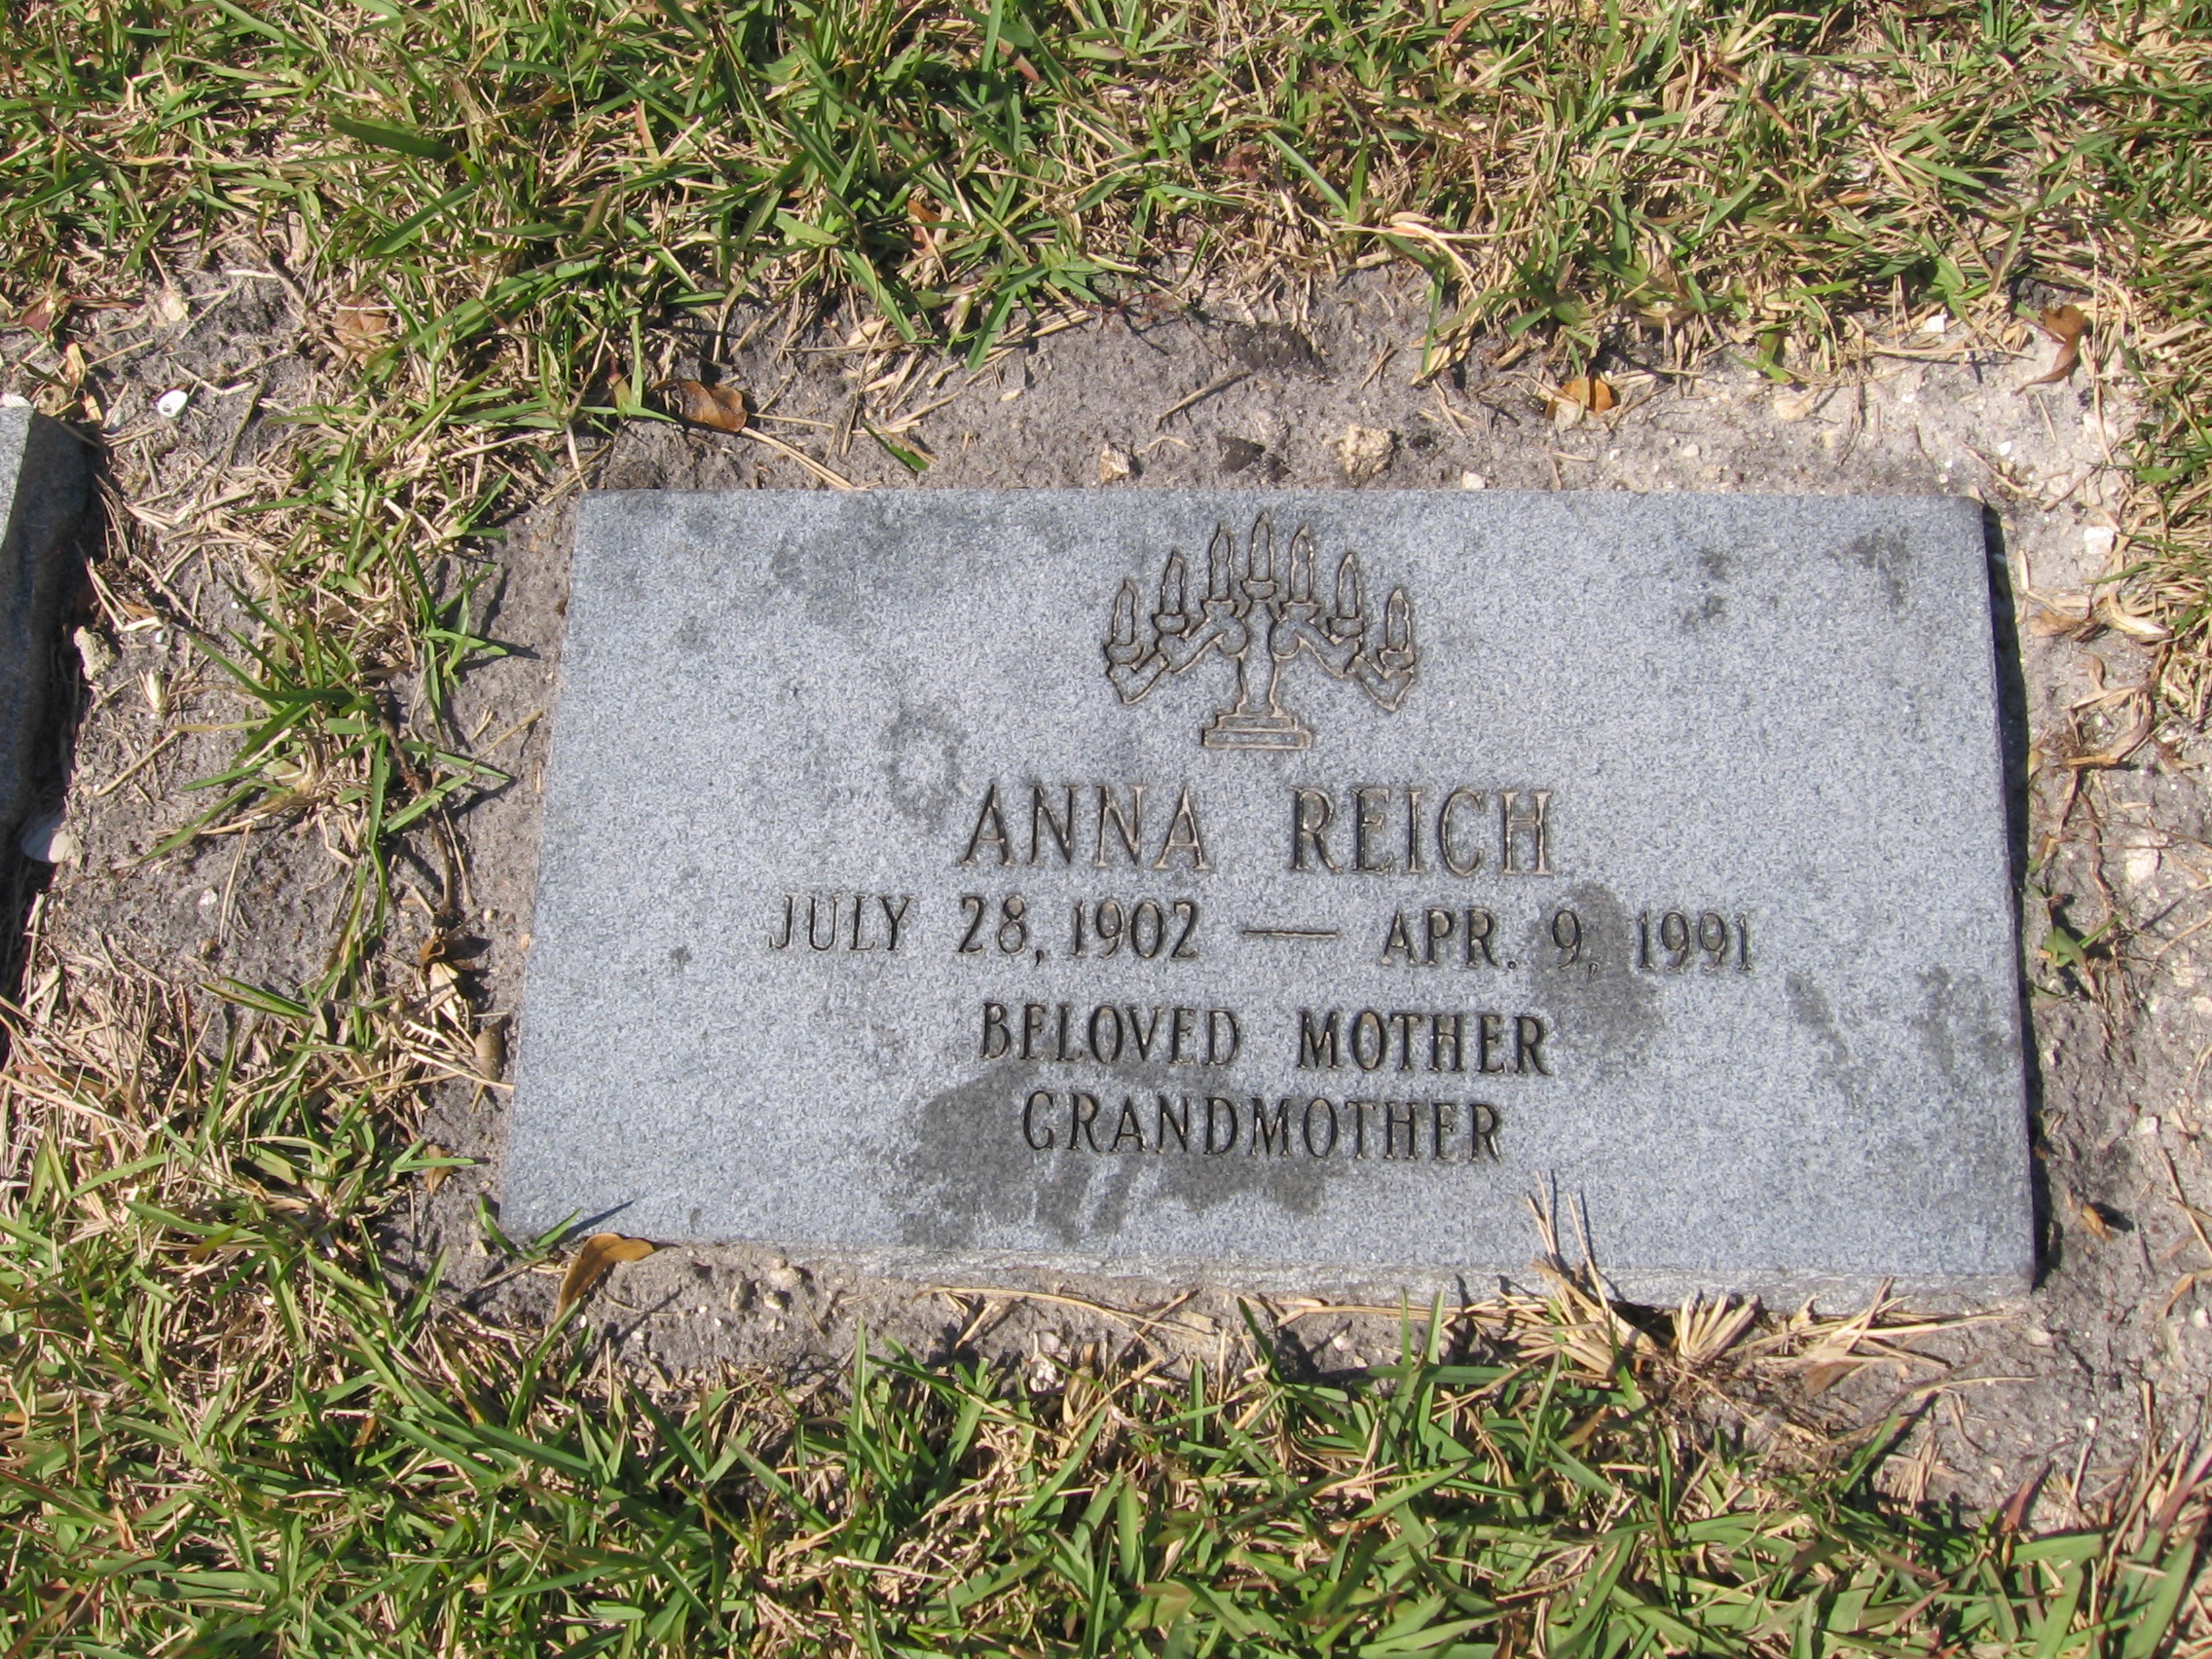 Anna Reich